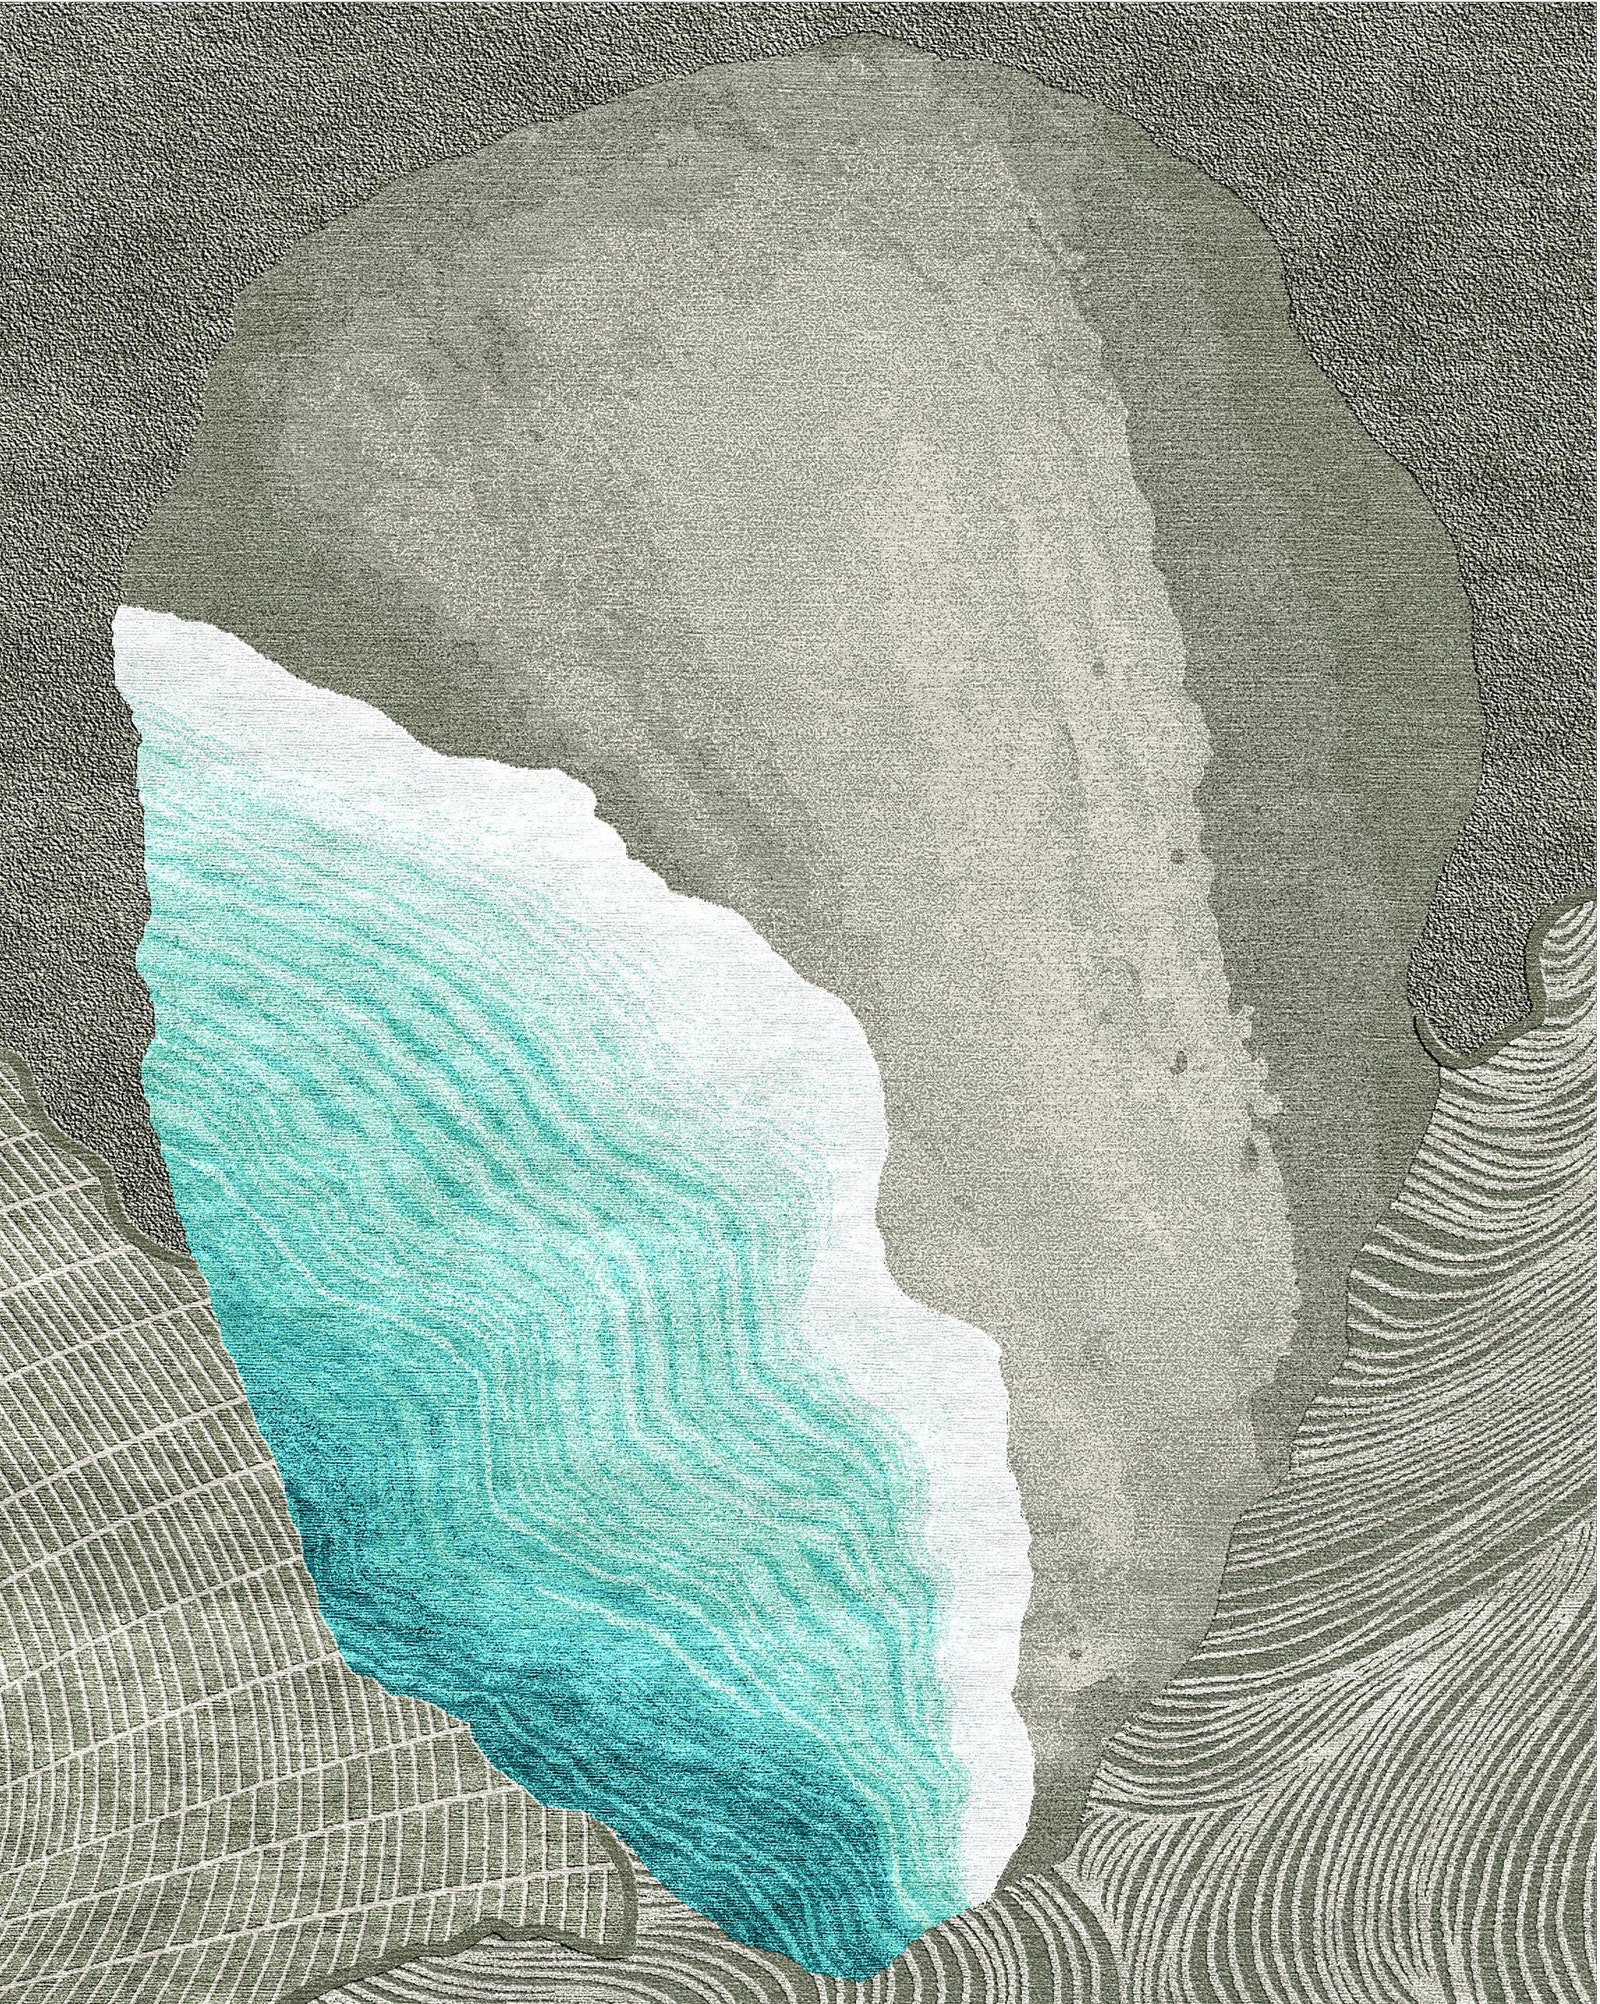 У мексиканки Карлы Селорио ковер Tulum Wave стал одой родной природе с ее пляжами подземными морями горами и вулканами.